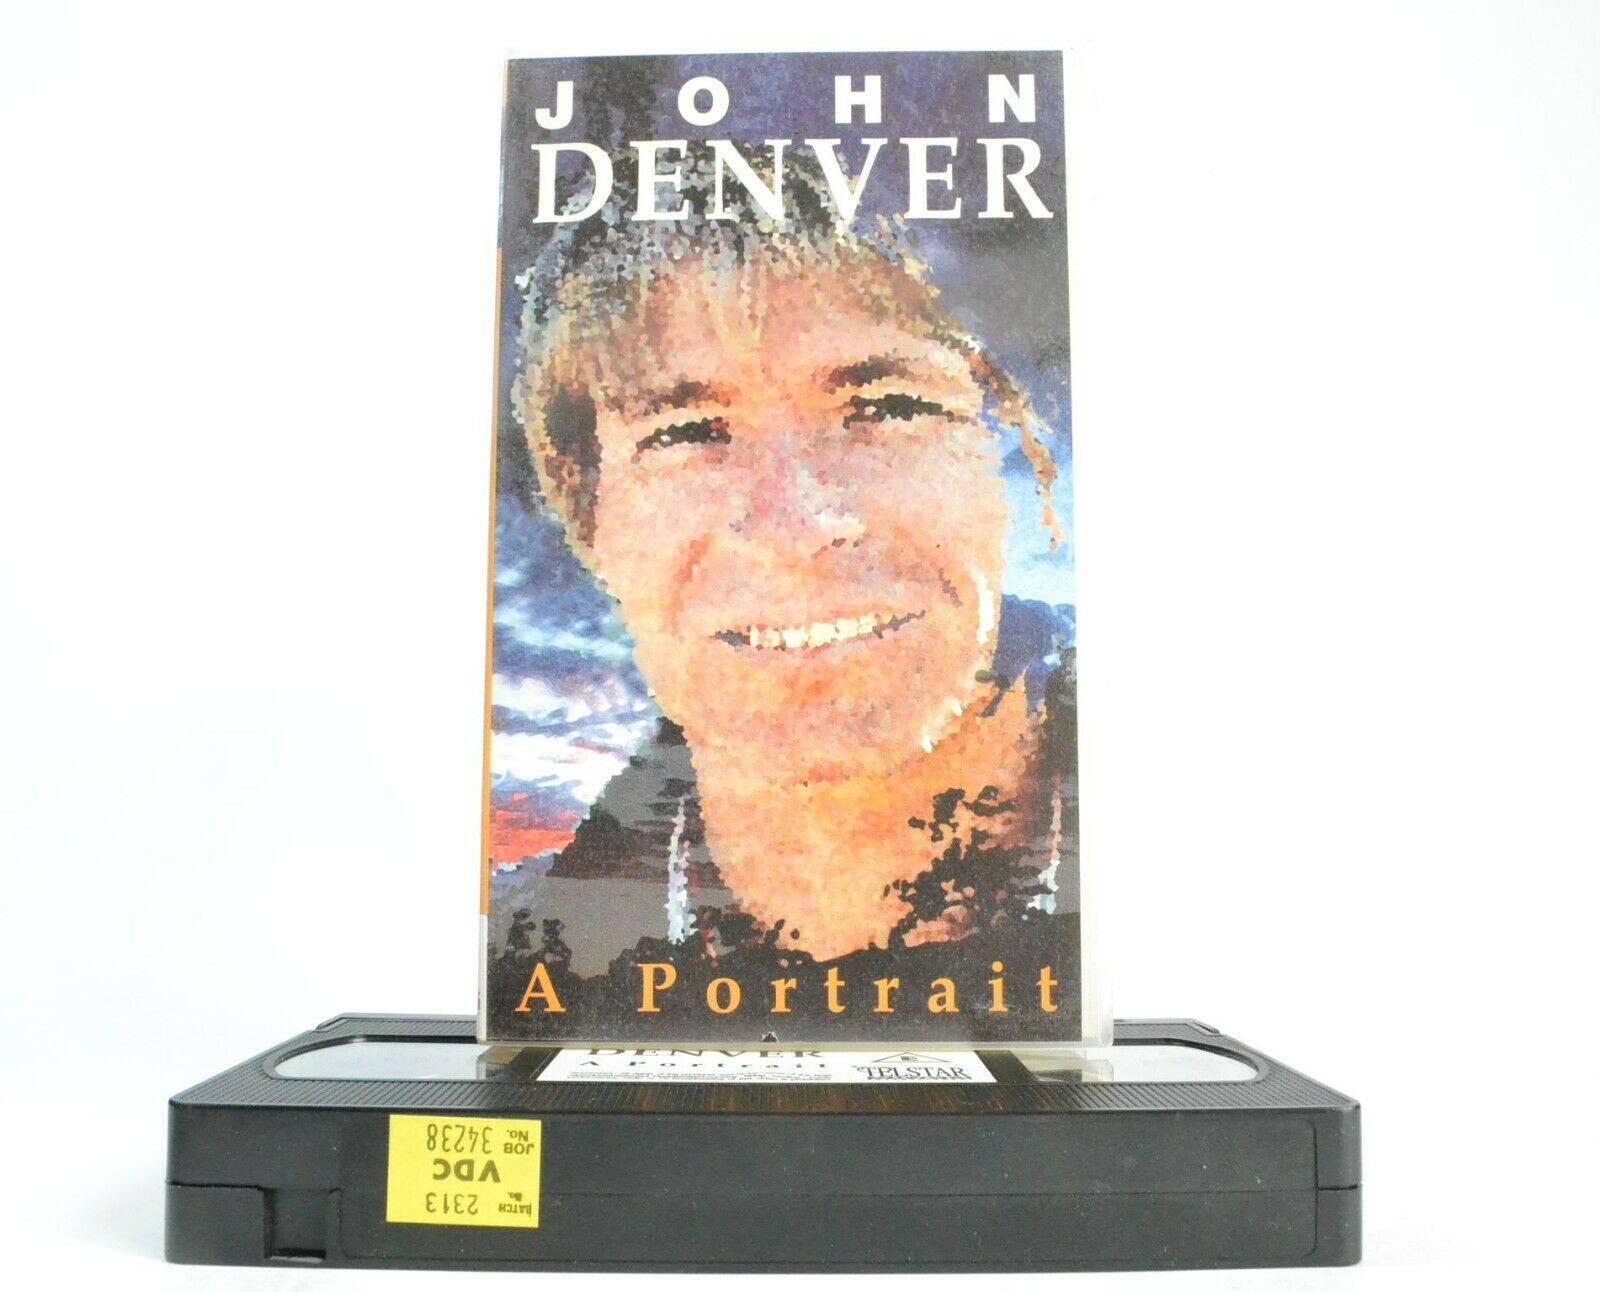 John Denver: A Portrait [Document]: TV Apperances - Personal Life - Music - VHS-